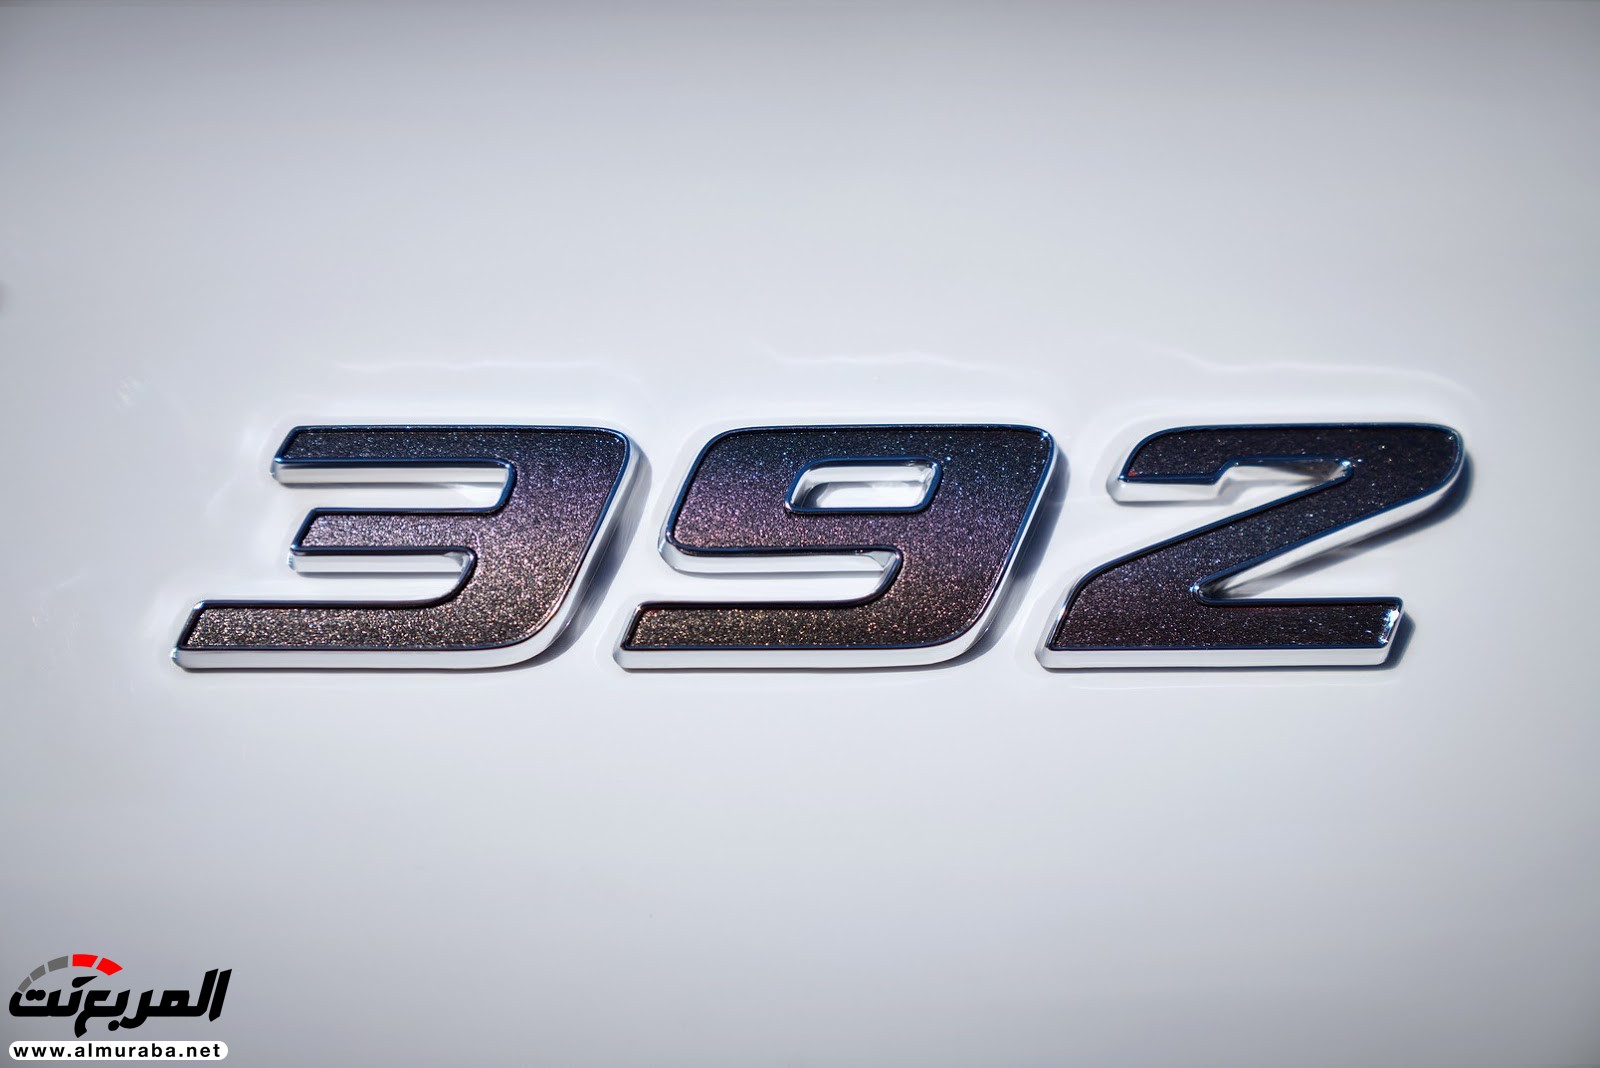 "دودج" دورانجو إس آر تي الجديدة كليا 2018 يكشف عنها بمحرك 475 حصان Dodge Durango SRT 33